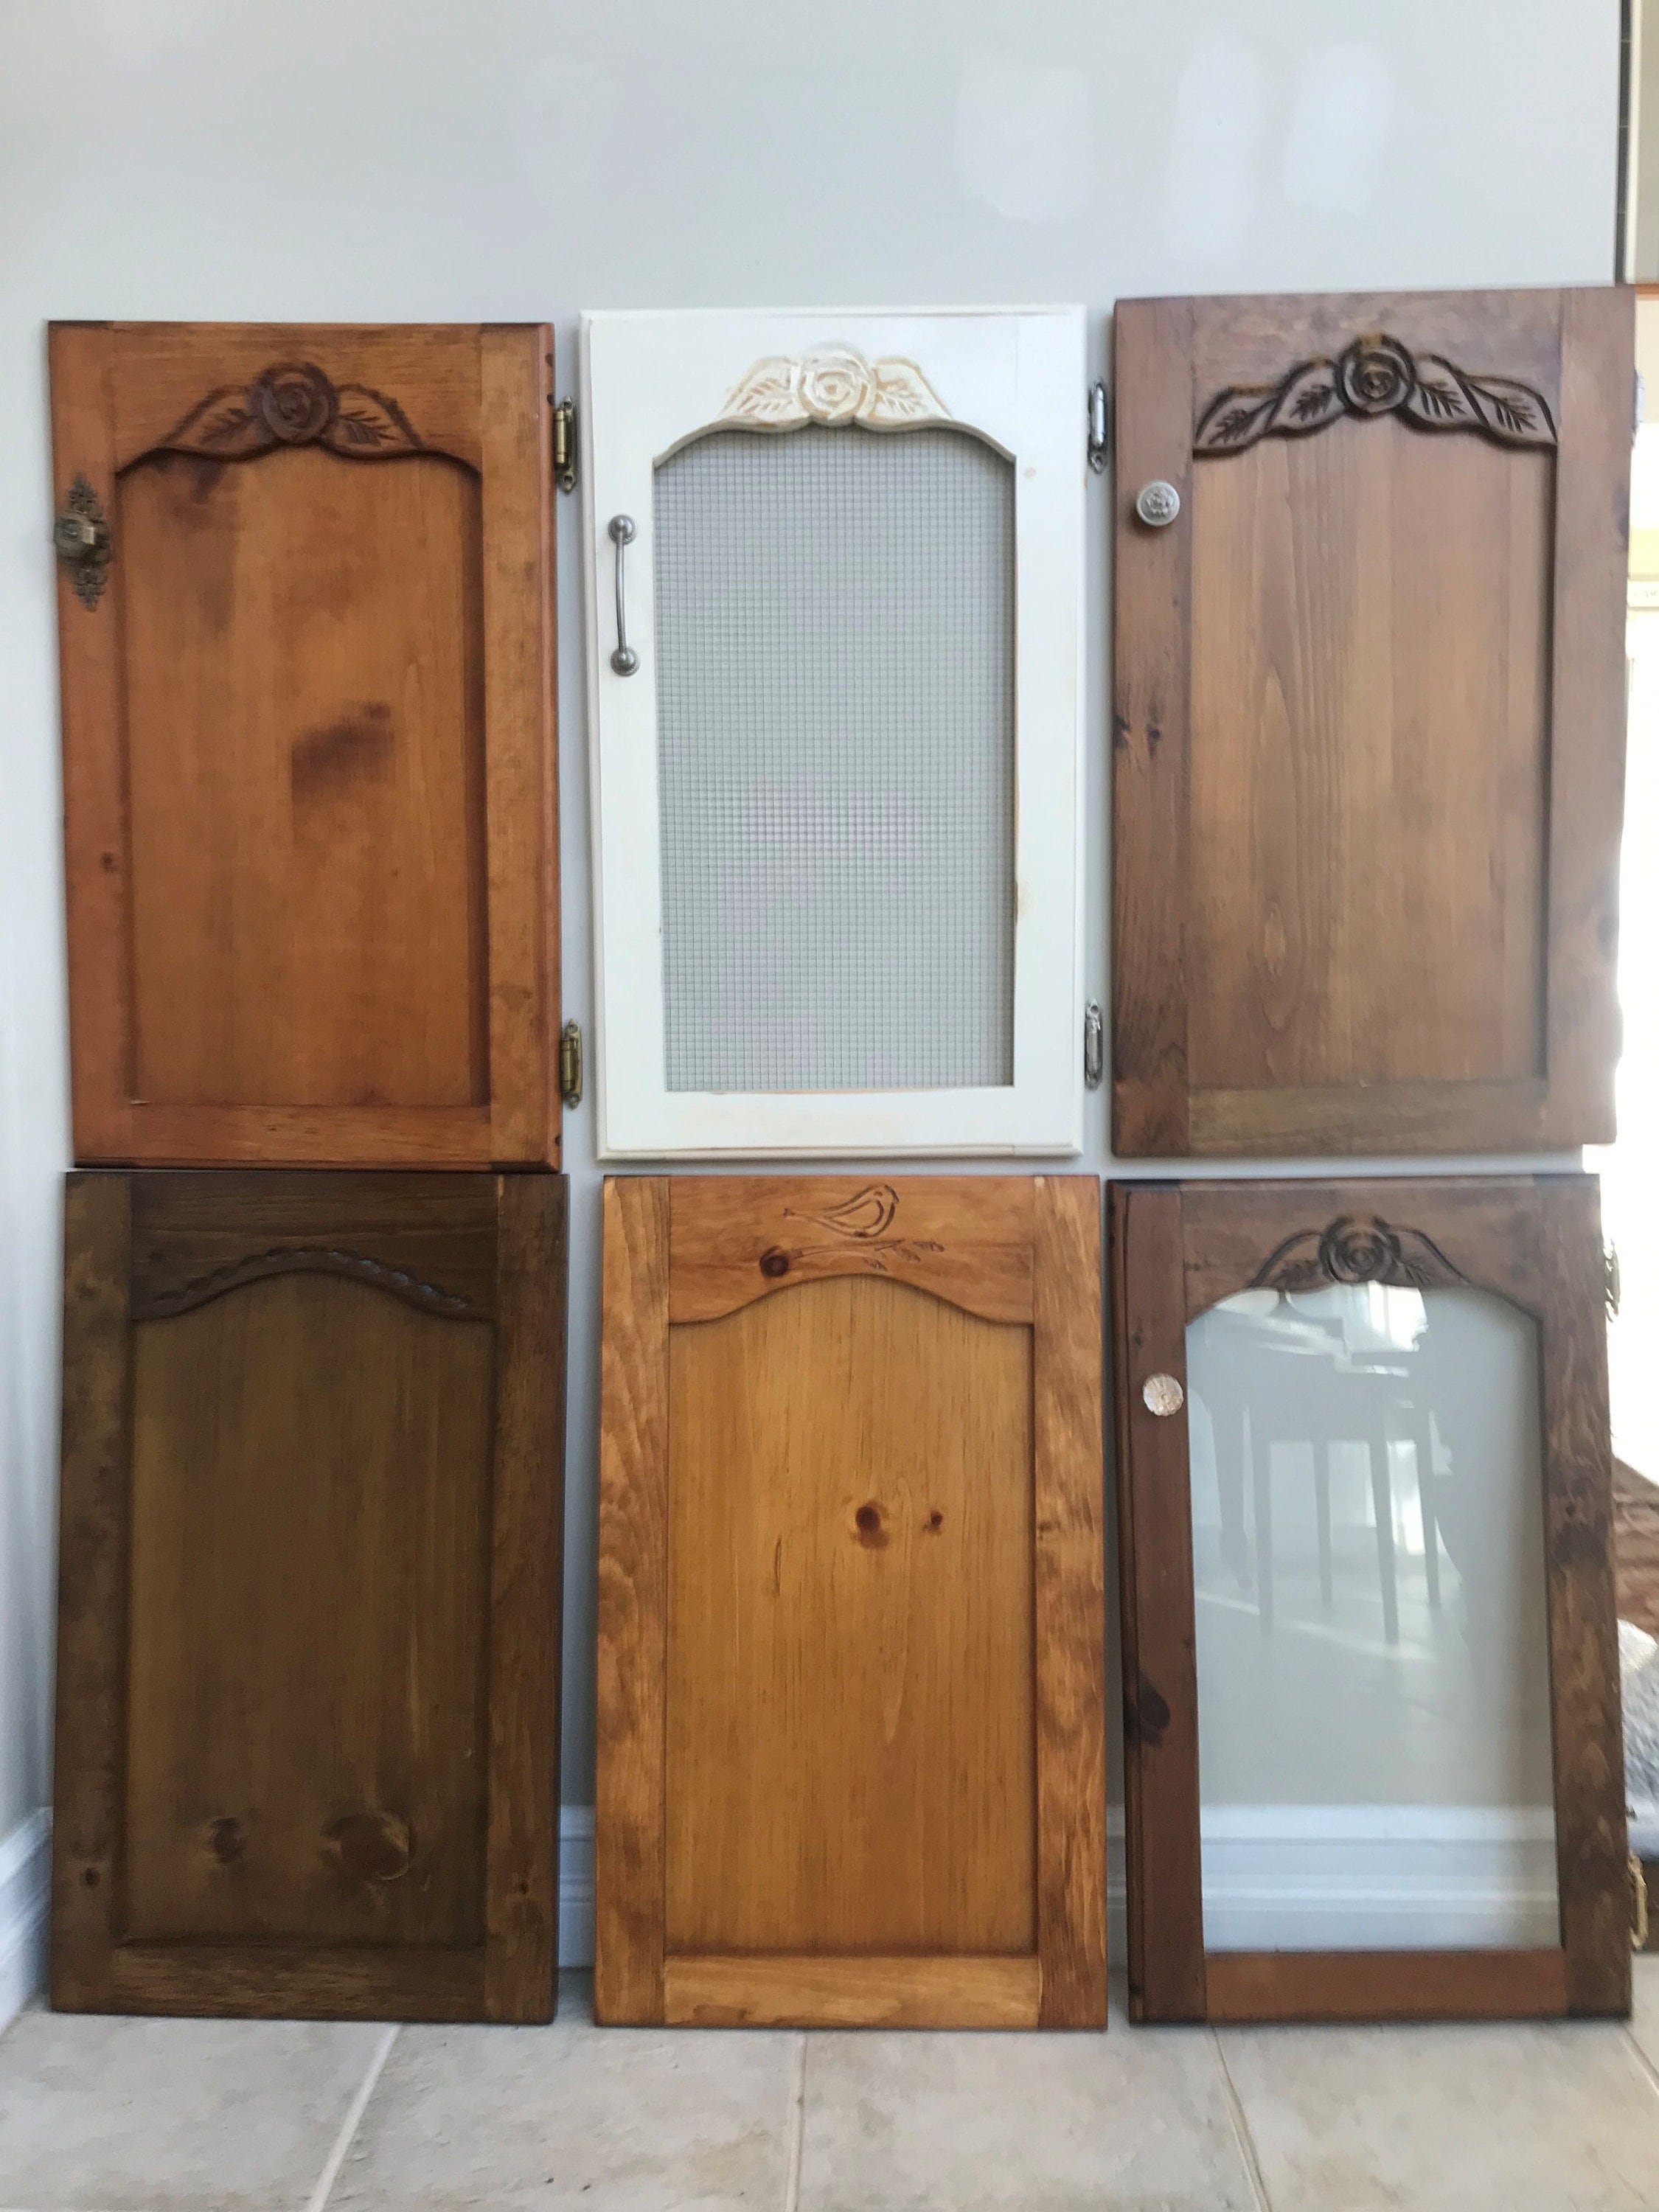 Replacement Cupboard Doors, Cabinet Doors, Kitchen or Bathroom Doors. Pine  Doors, Wood Doors, Replacement Doors, Woodcraft, Artisan Doors. -   Canada